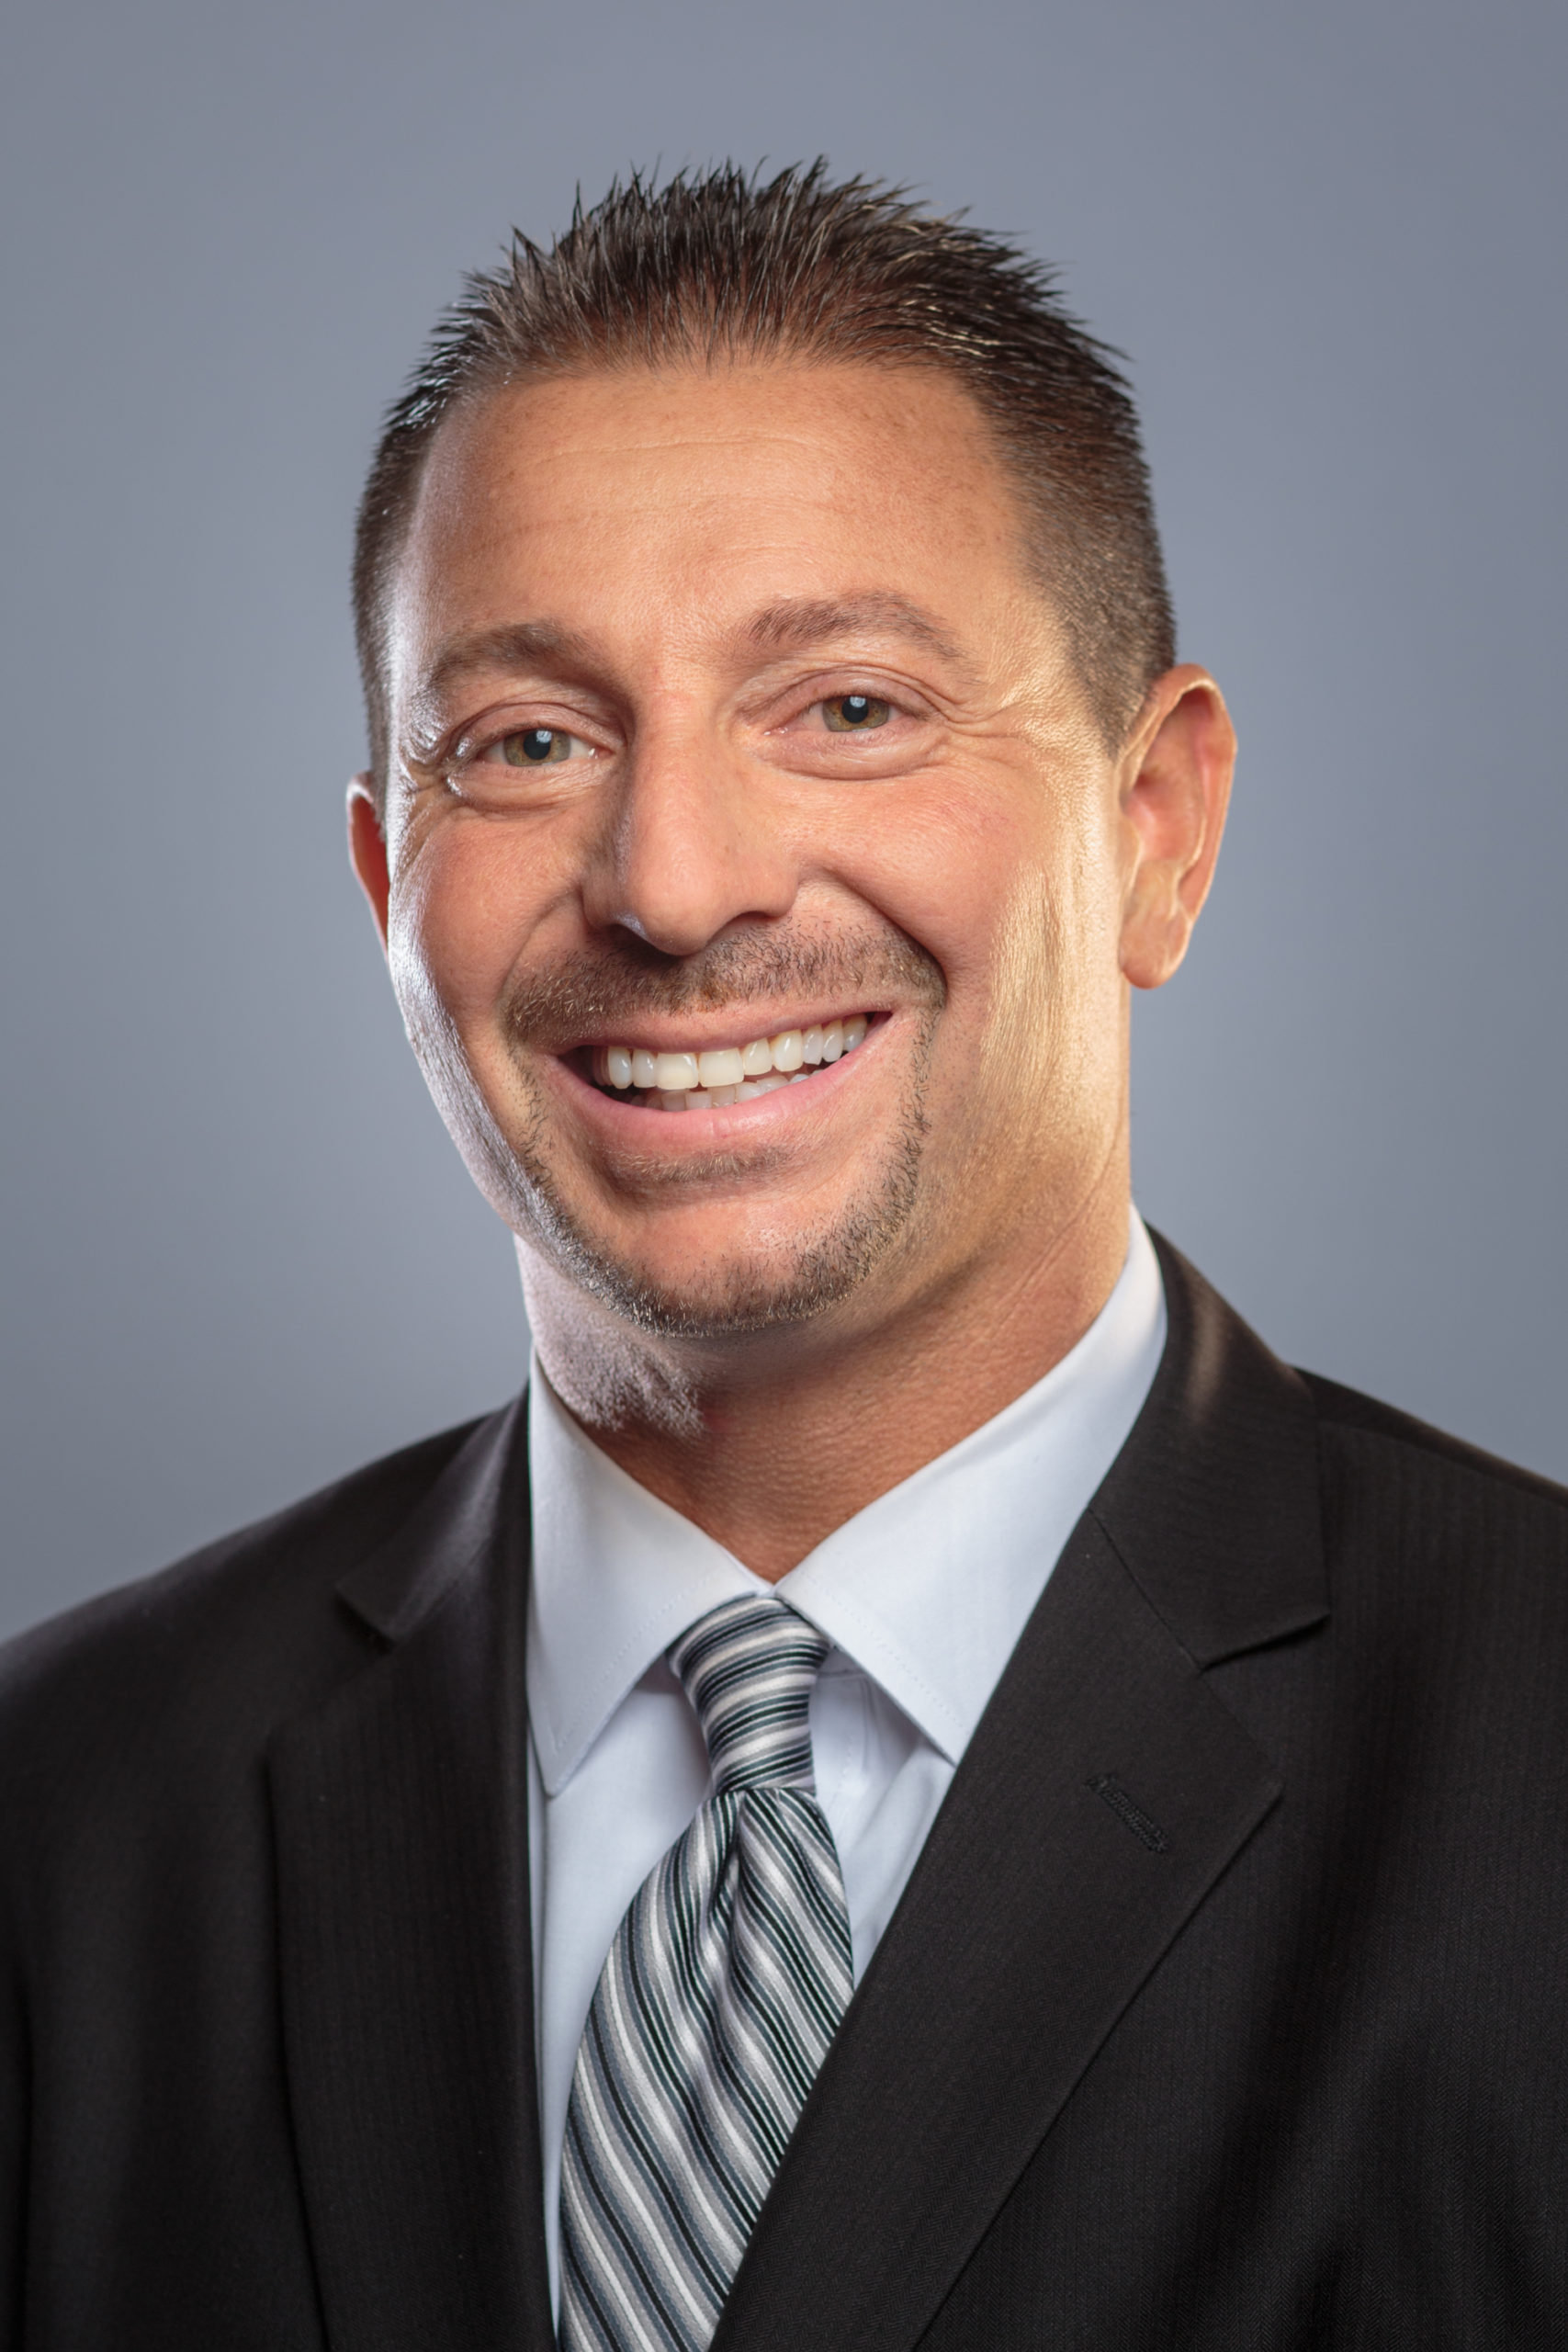 Mark D. Benigni is superintendent of Meriden Public Schools in Connecticut.